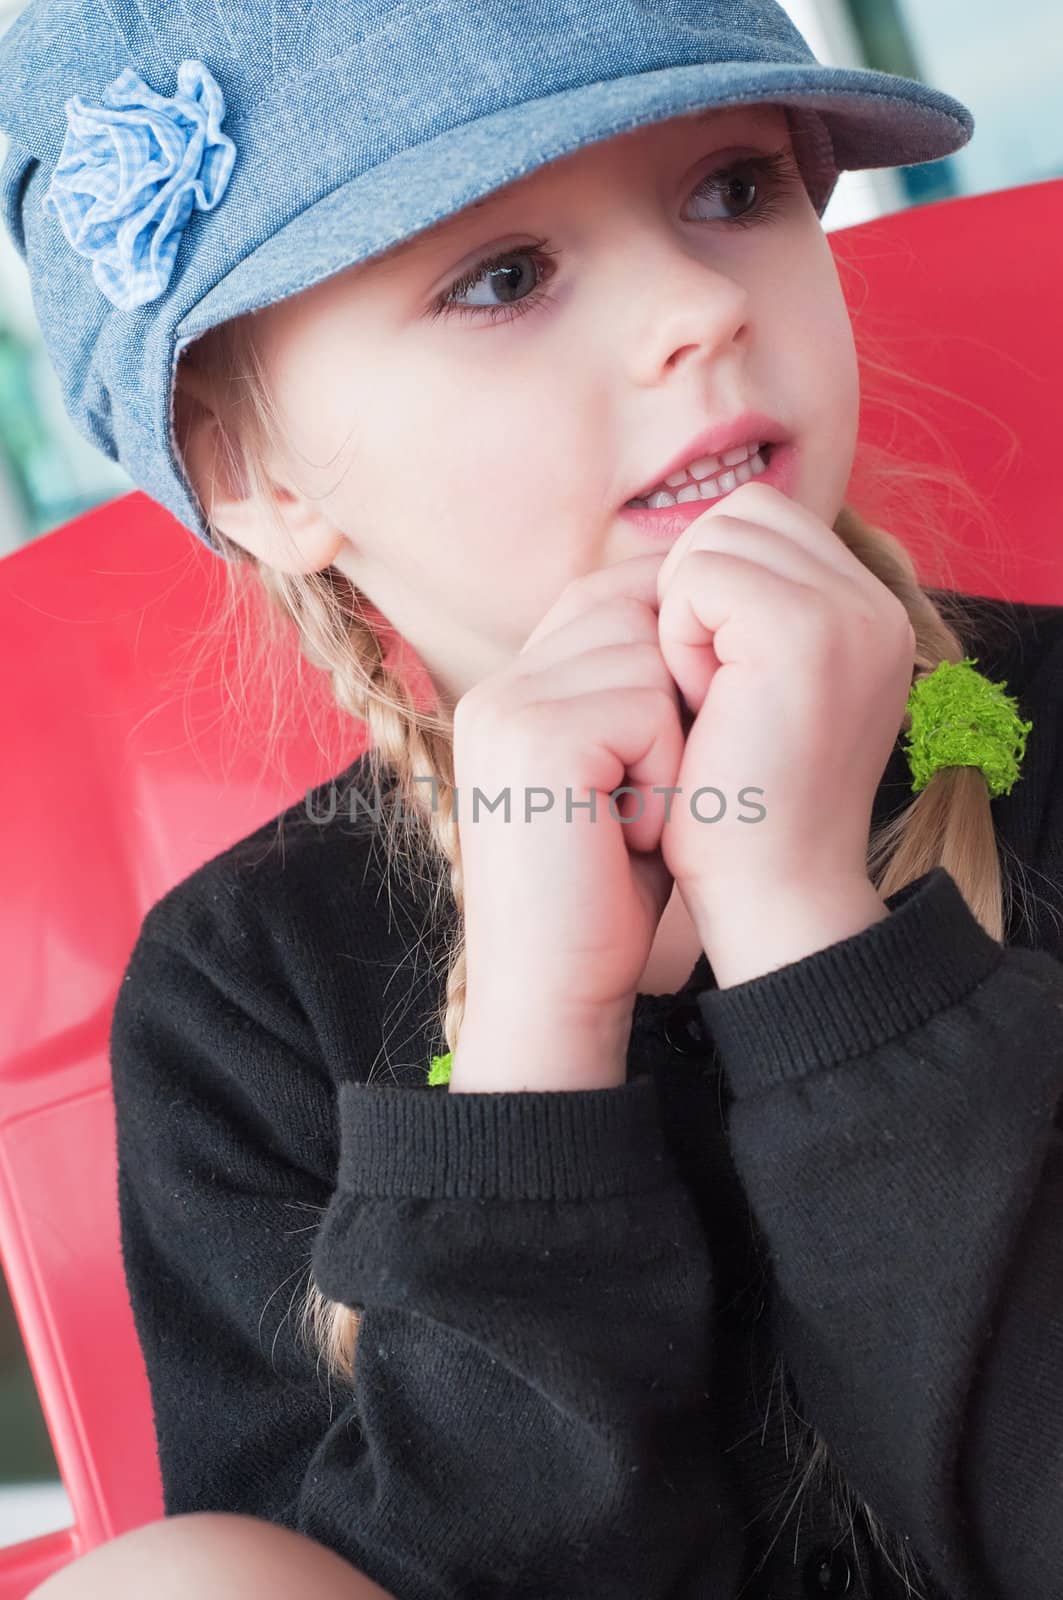 Portrait of little girl in denim hat